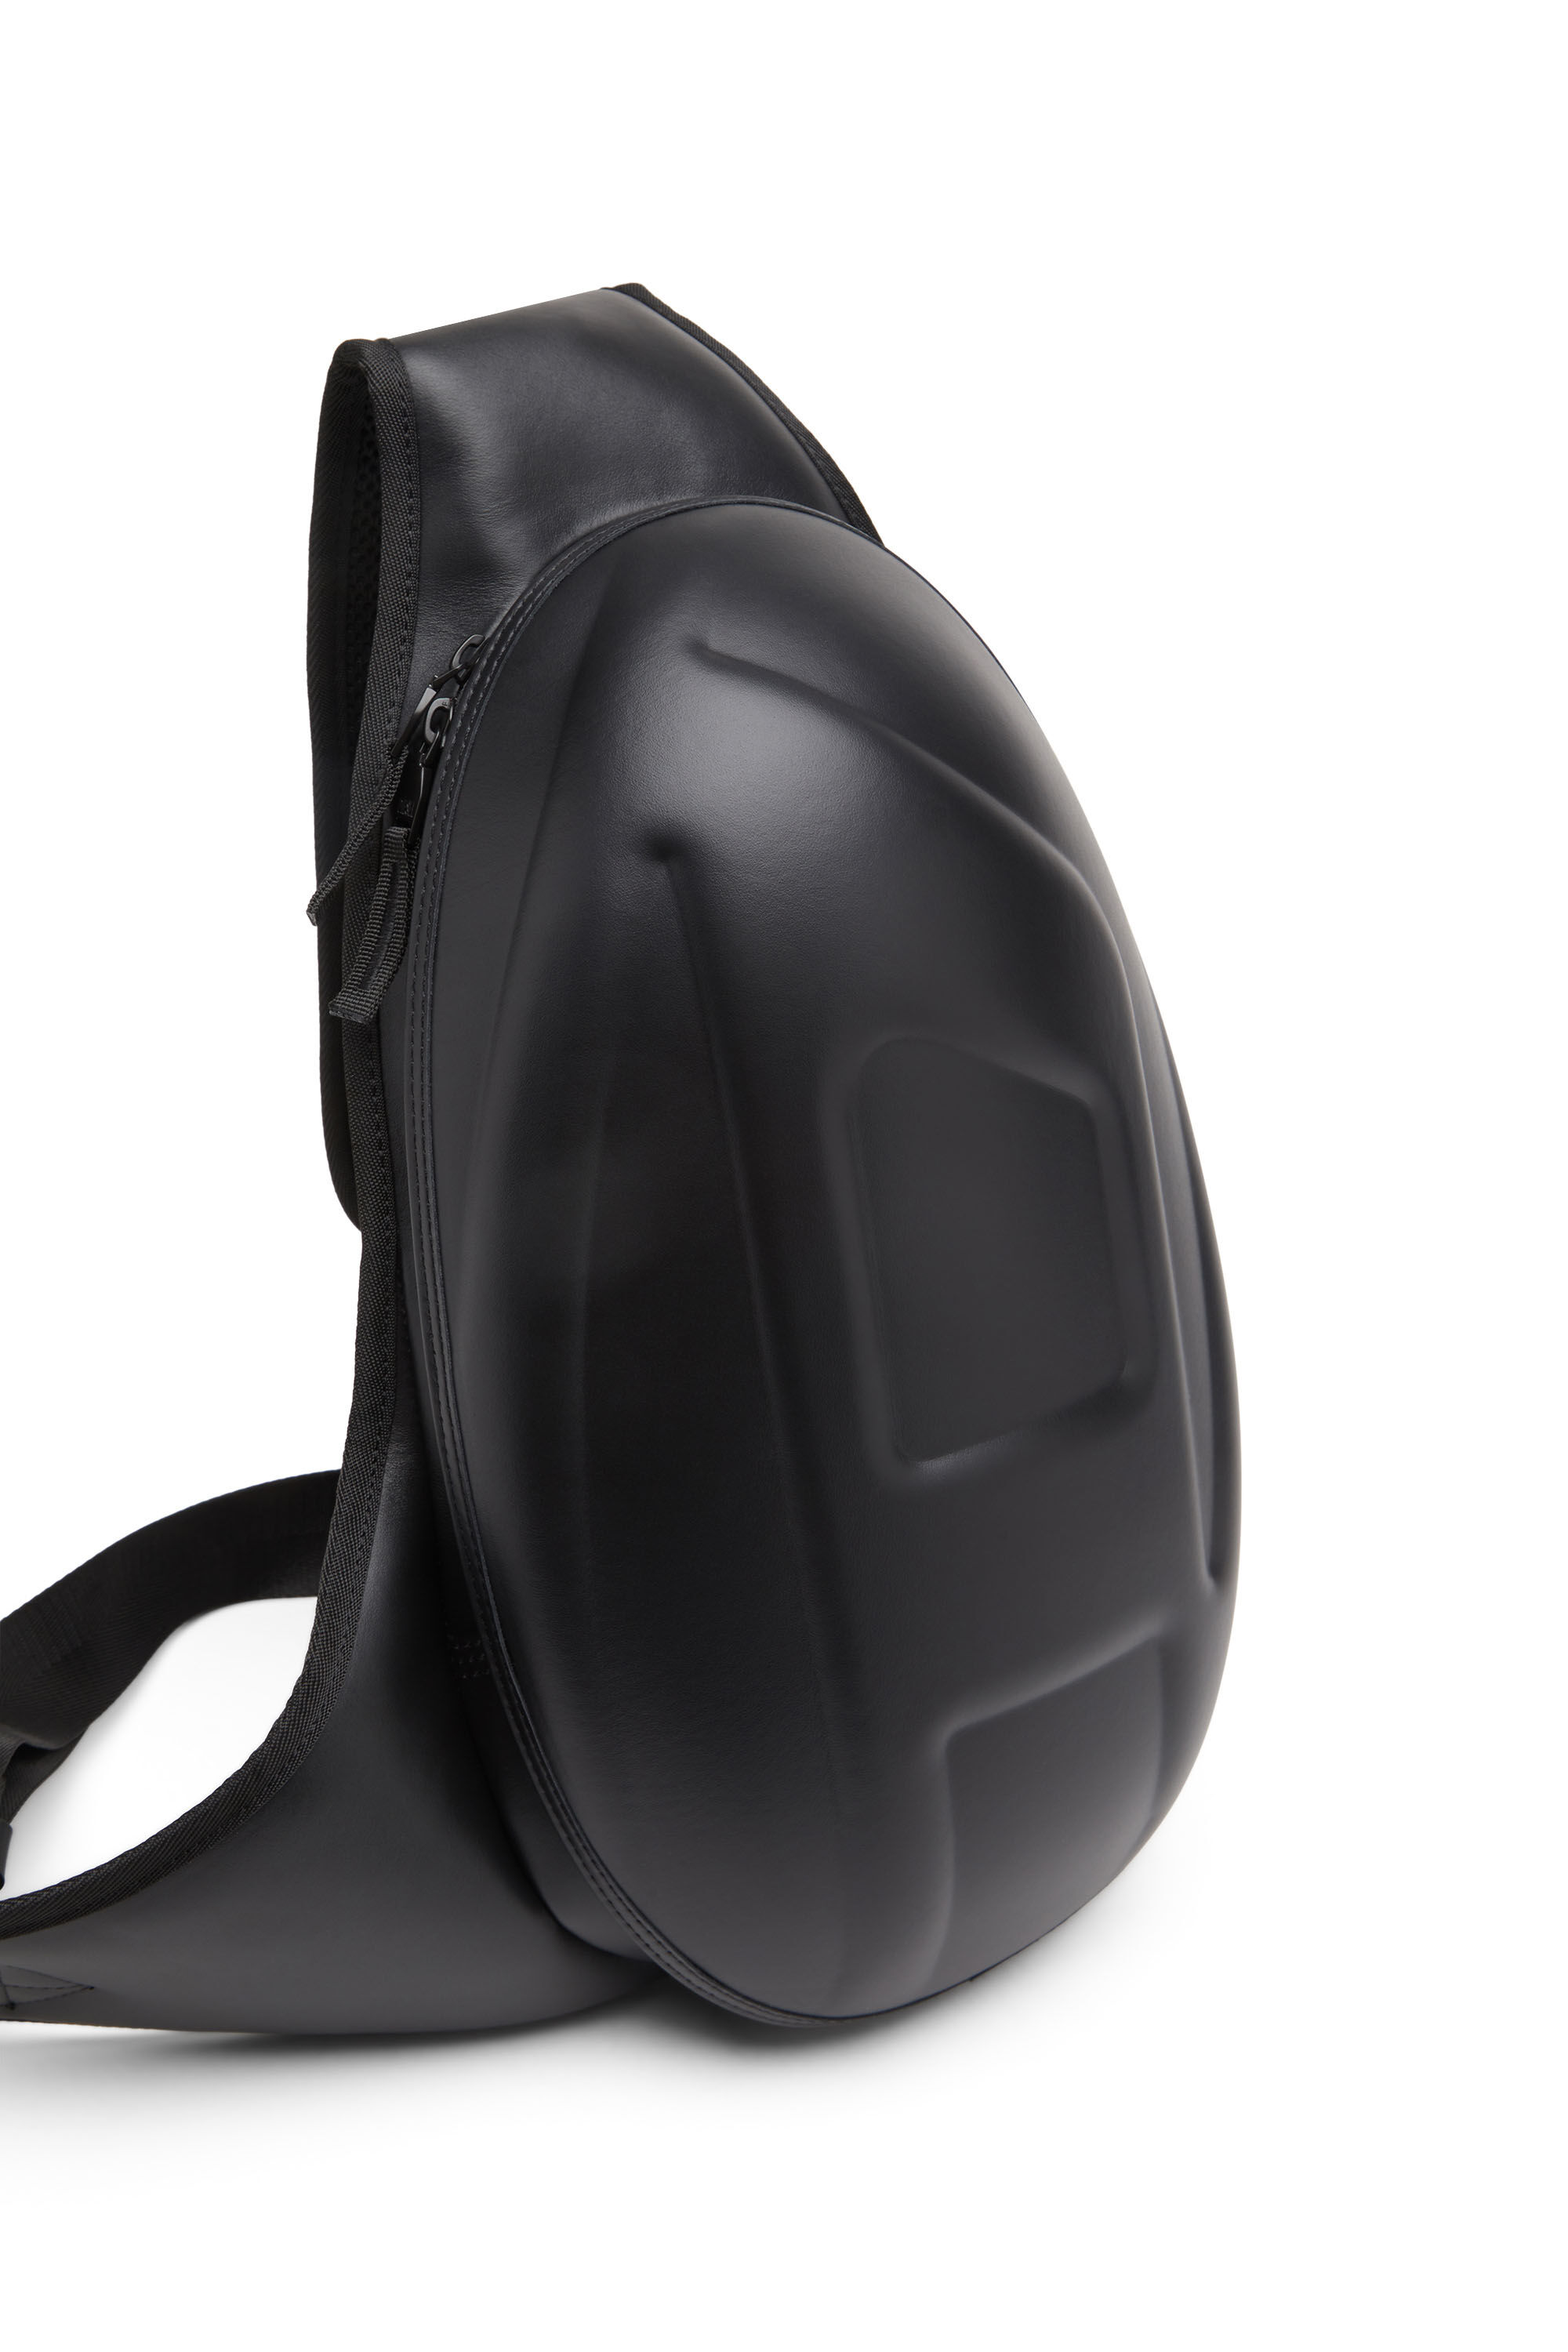 Men's 1DR-Pod Sling Bag - One-shoulder backpack in leather | Black ...